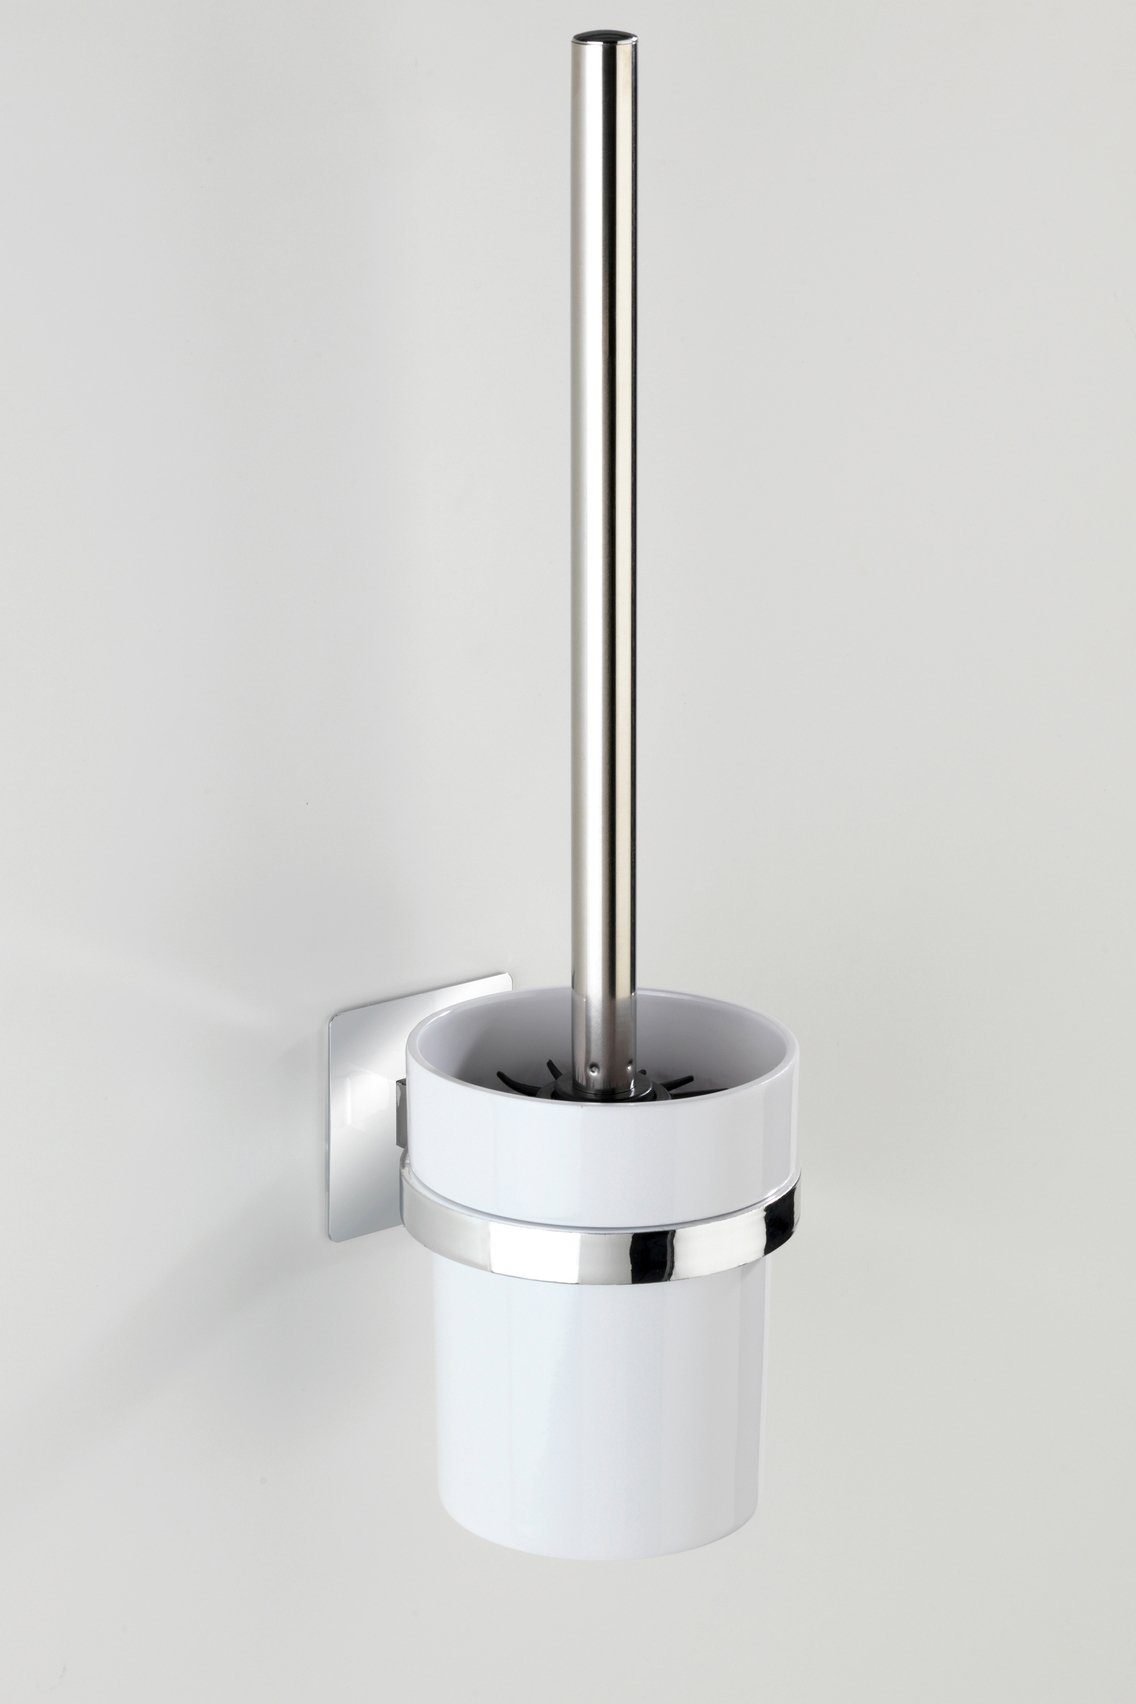 (1-tlg), Bohren WC-Garnitur Turbo-Loc WENKO Quadro, ohne